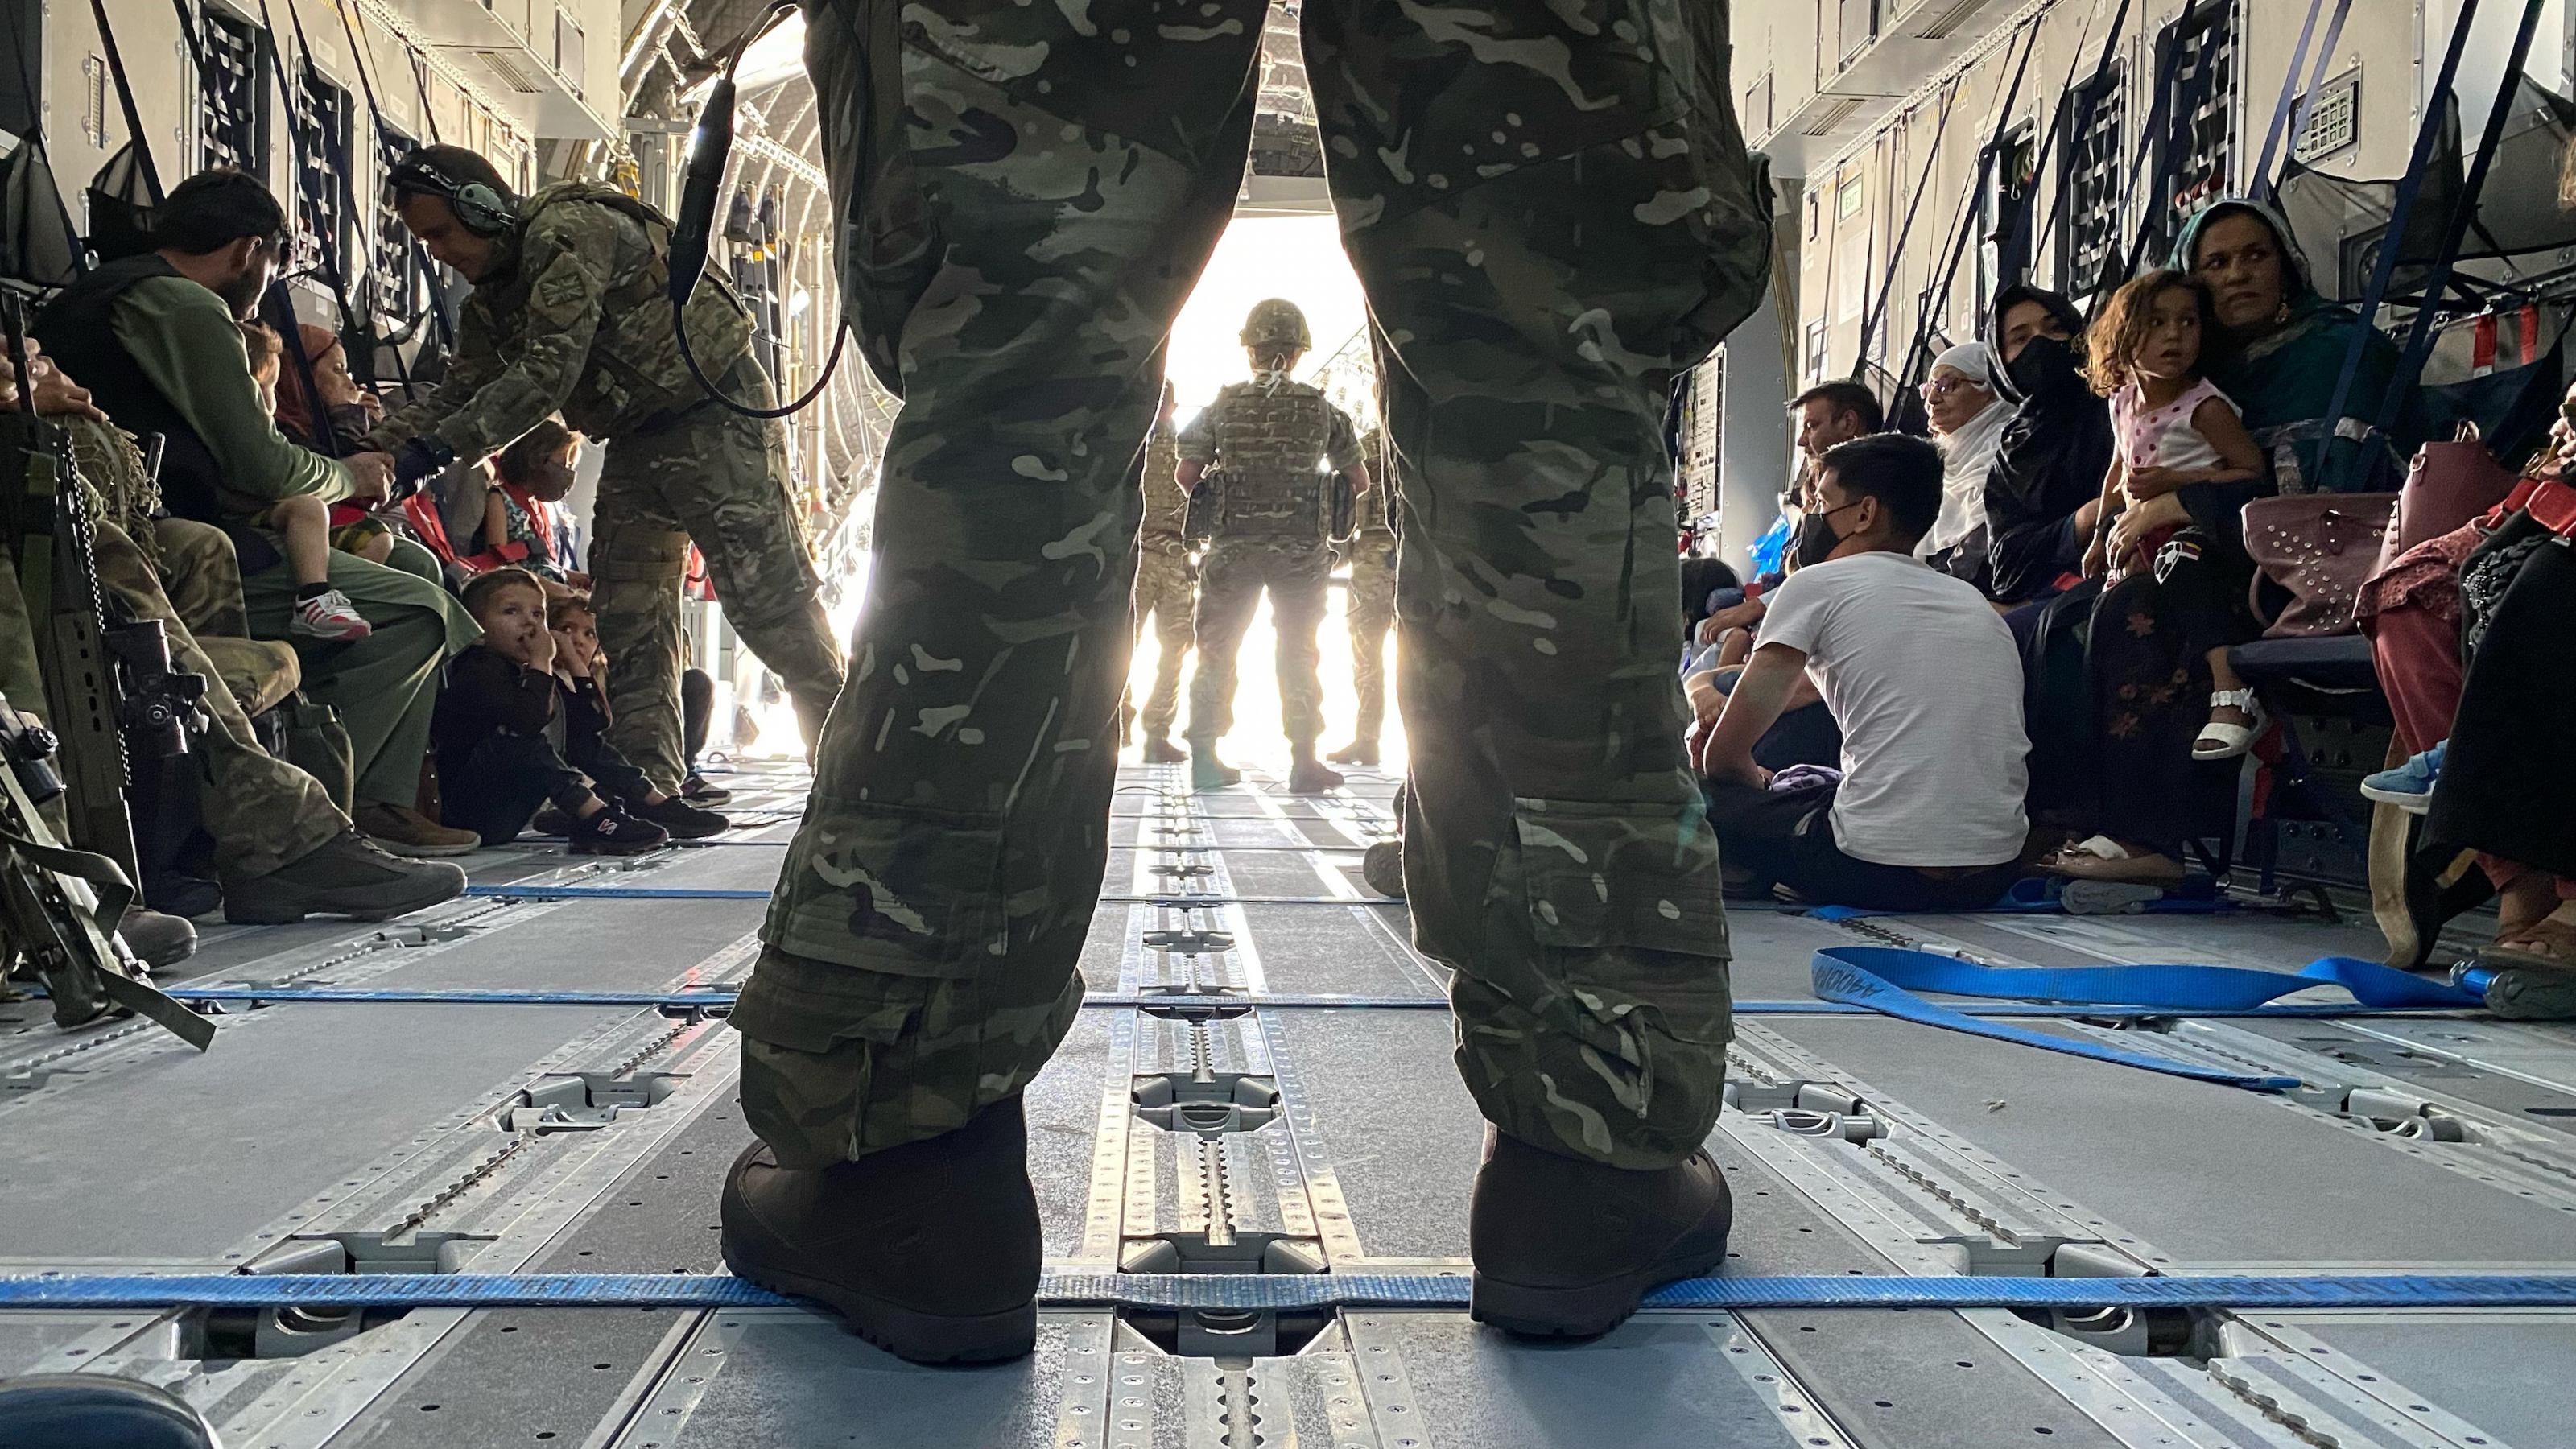 Blick in den Laderaum einer britischen Militärmaschine, im Vordergrund die Beine eines breitbeinig stehenden Soldaten in Tarnuniform. Im Hintergrund zivile Personen, die auf dem Boden des Flugzeuges sitzen.